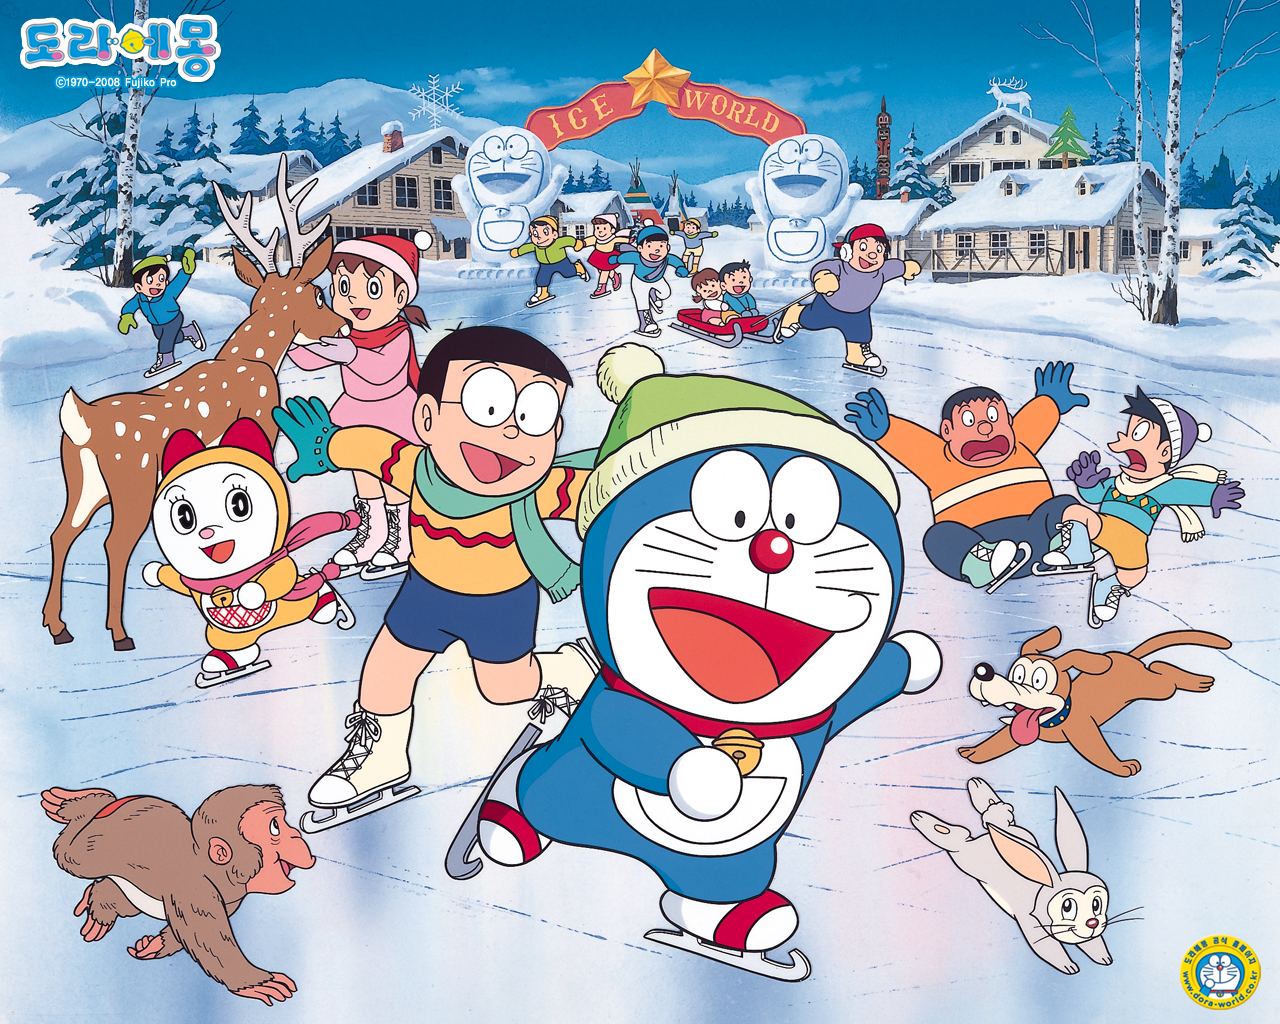 Tận hưởng tuổi thơ cùng những hình ảnh Doraemon đáng yêu và vui nhộn nhất. Chỉ cần một cái nhấn chuột, bạn sẽ được truyền cảm hứng dễ thương mà nhân vật này đem lại.